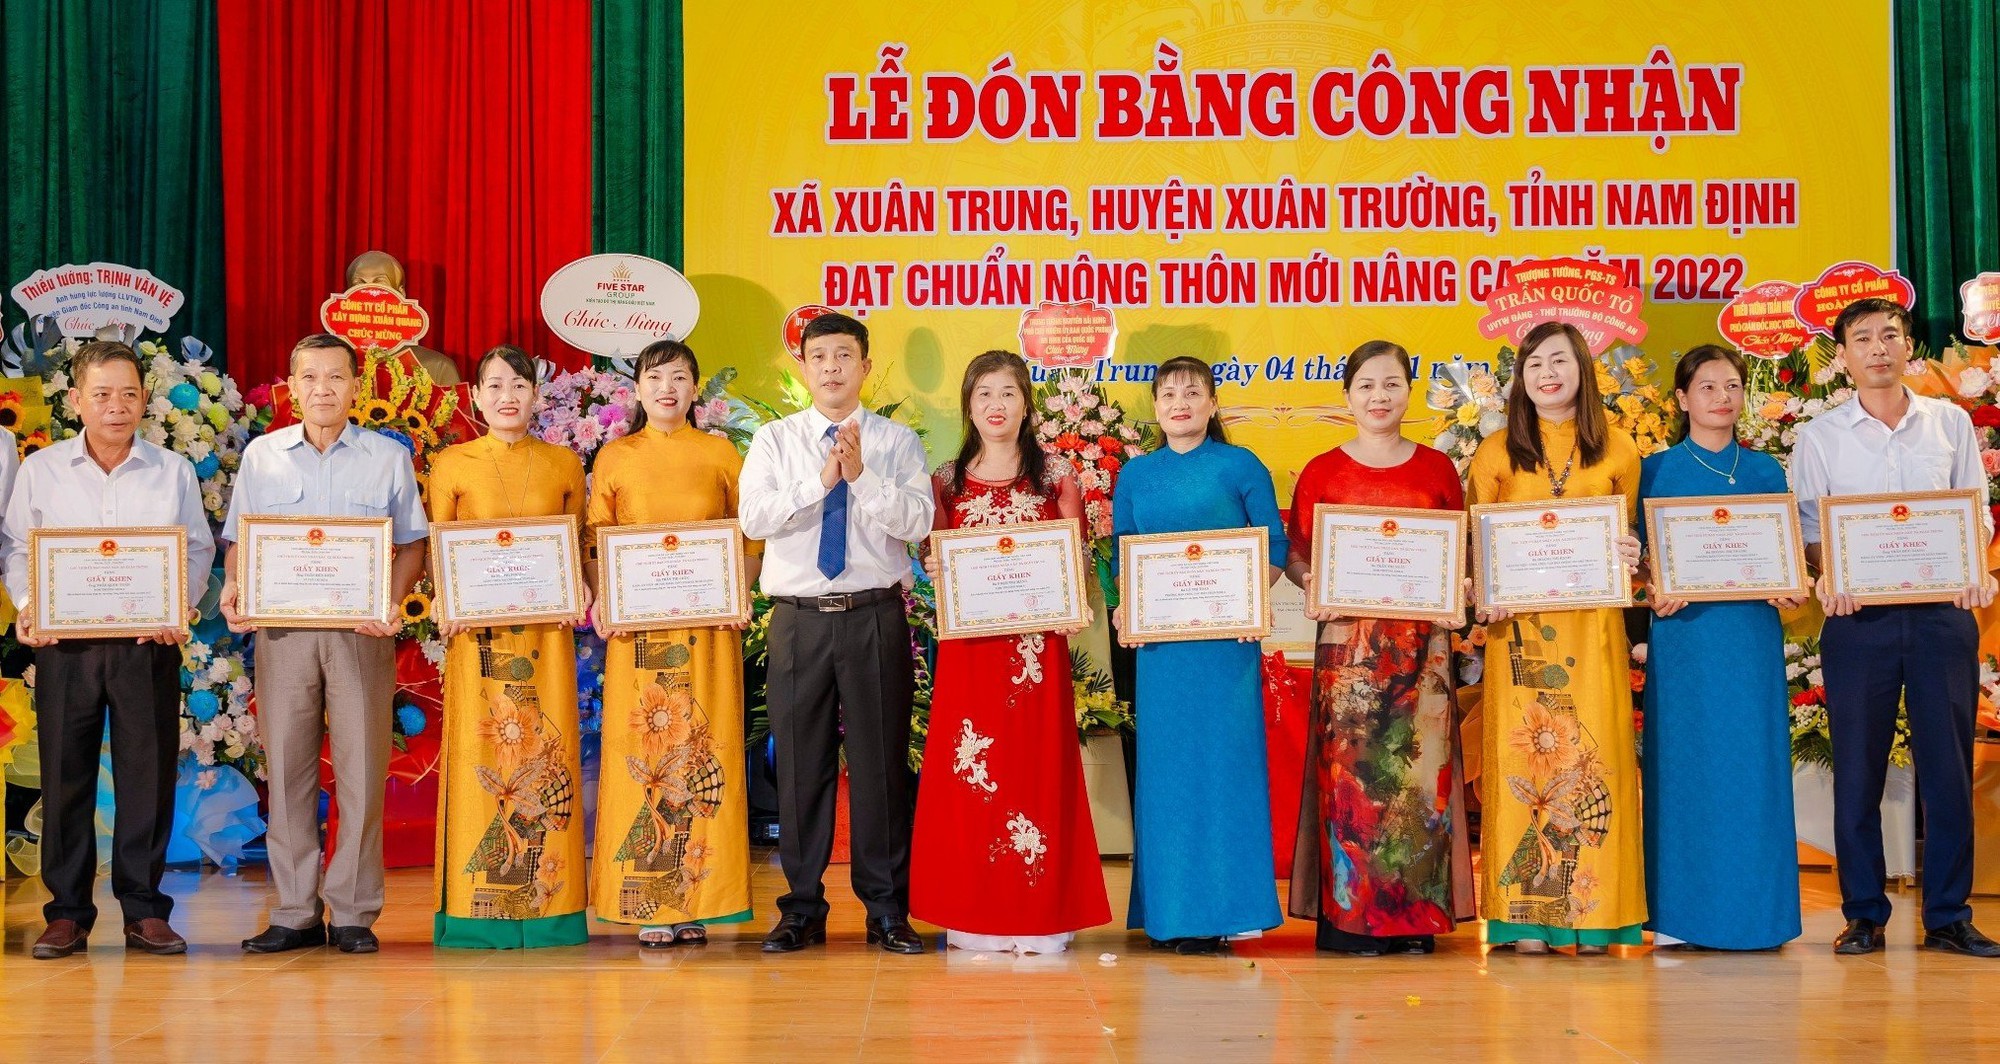 Nam Định: Xã Xuân Trung đón nhận Bằng nông thôn mới nâng cao năm 2022 - Ảnh 3.